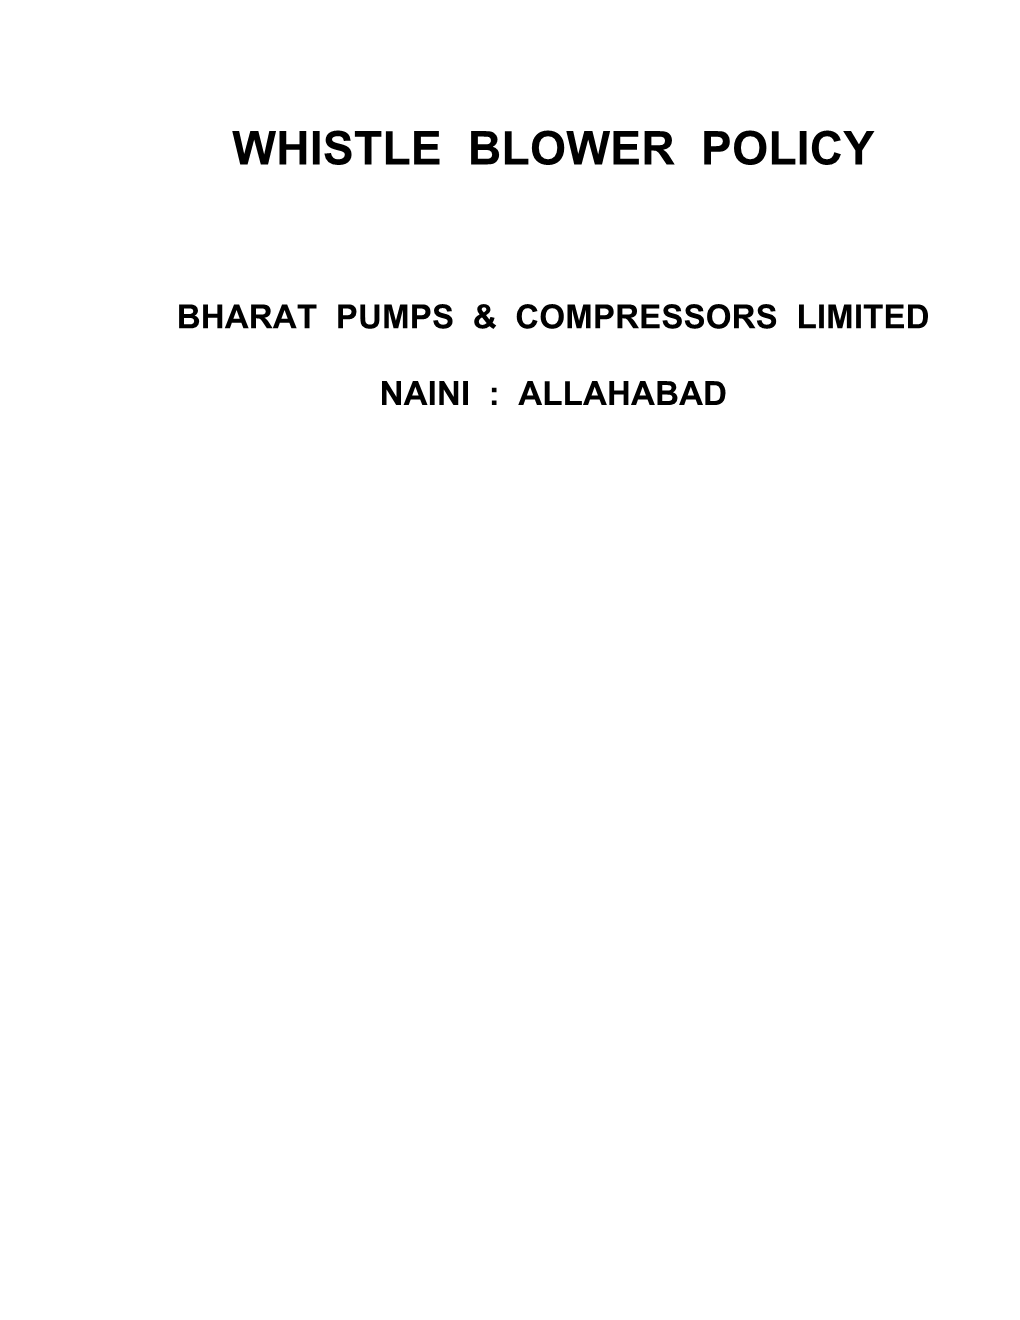 Bharat Pumps & Compressors Limited